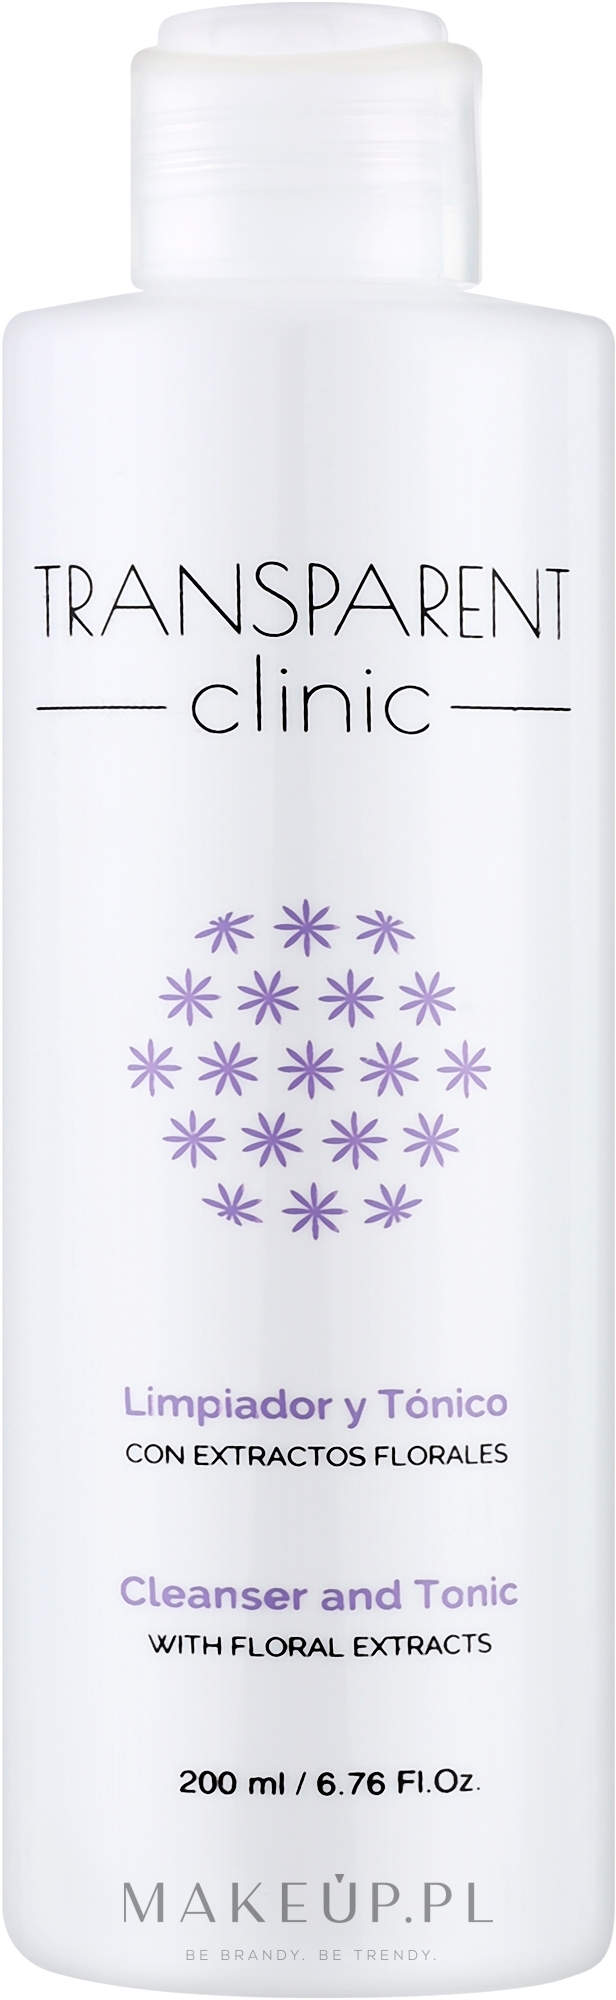 Oczyszczający tonik do twarzy - Transparent Clinic Cleanser and Tonic — Zdjęcie 200 ml